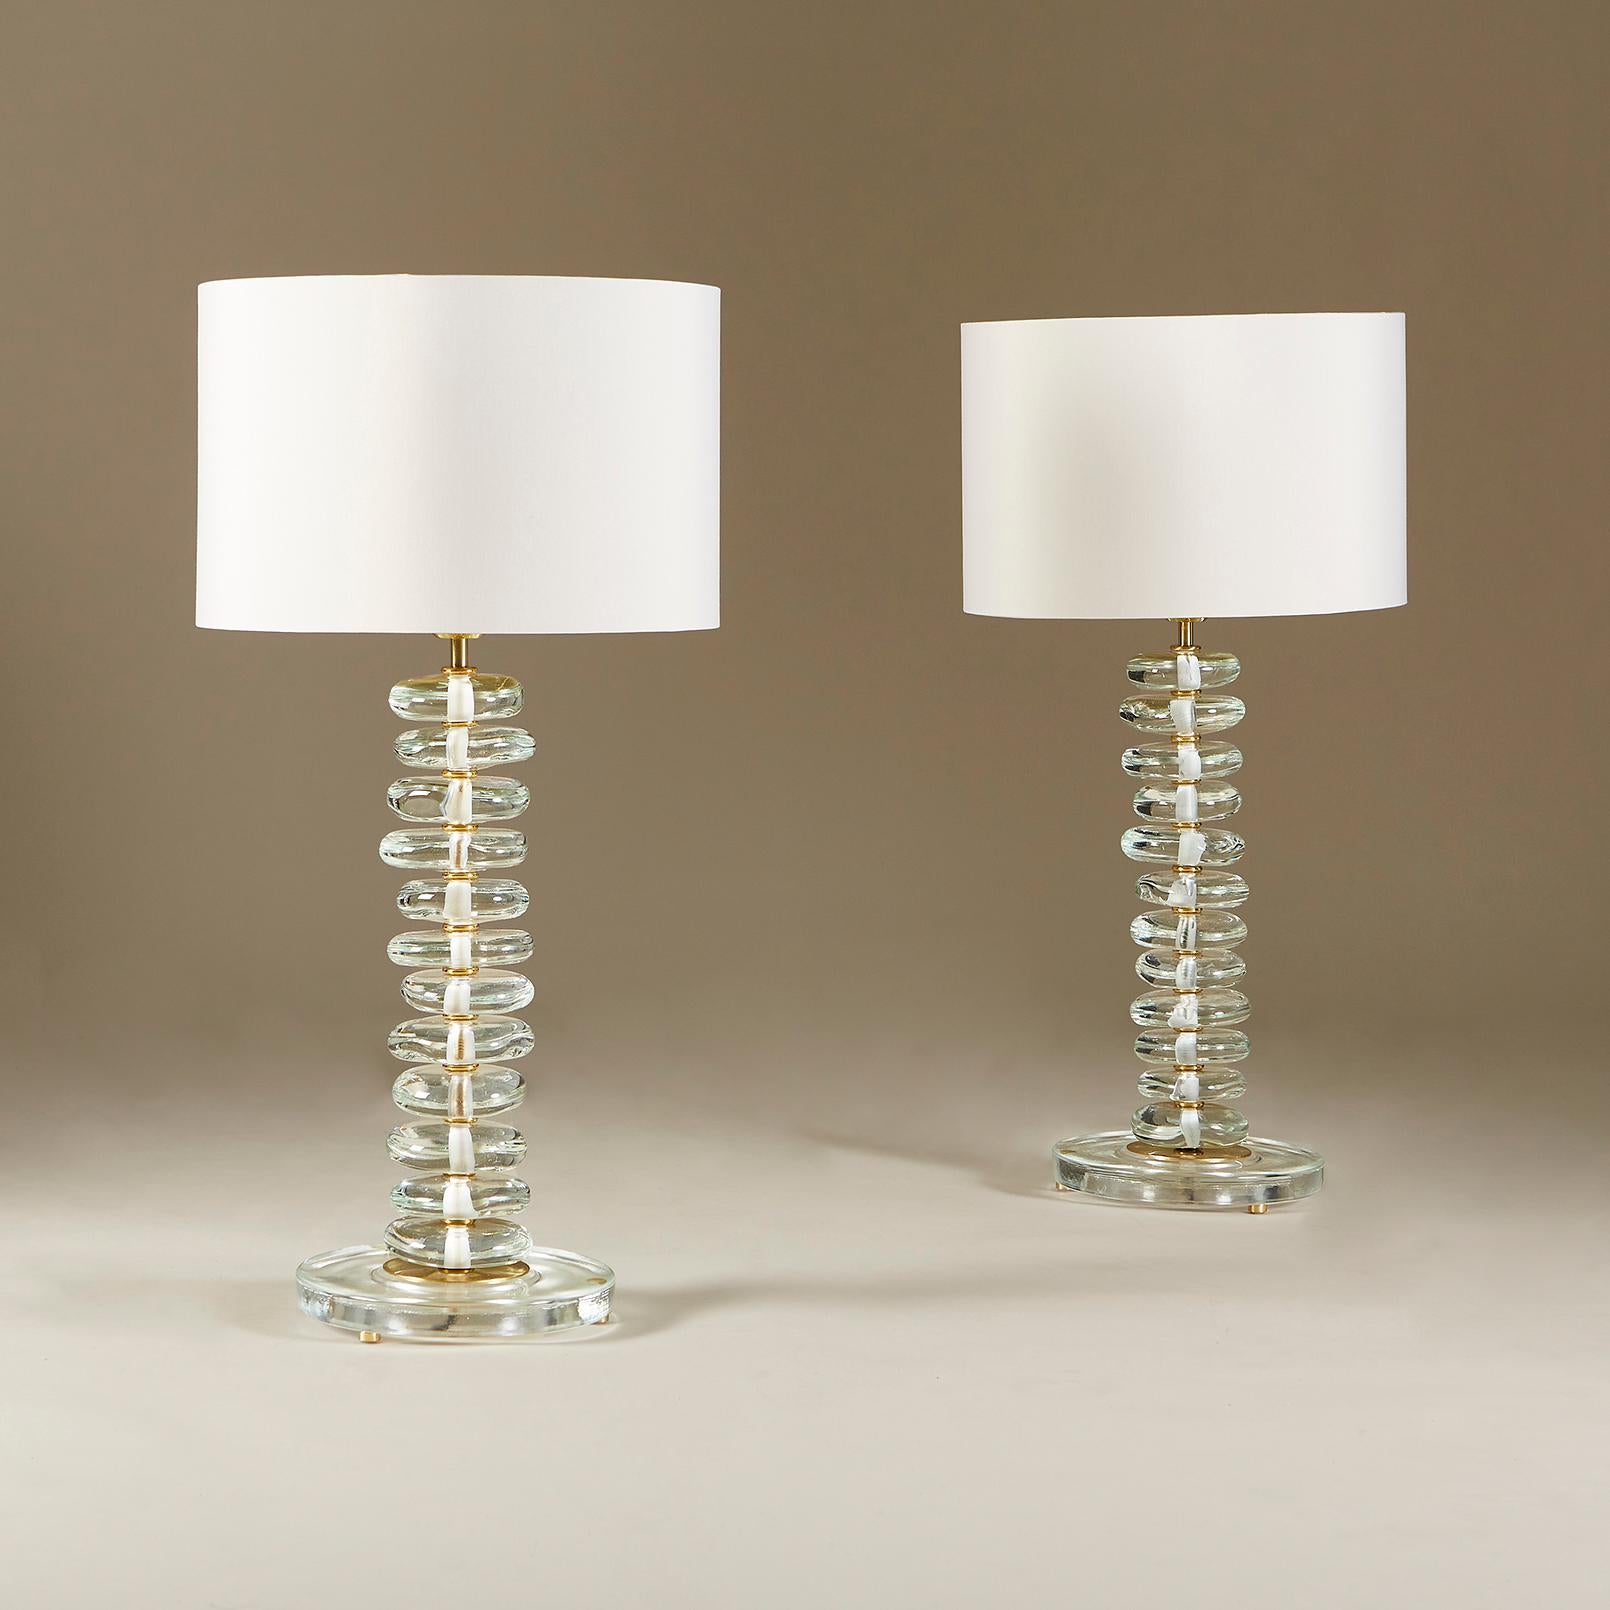 Hohe zeitgenössische Tischlampen, bestehend aus Säulen aus einzeln geformten Glaskieseln, die auf runden Glassockeln mit Messingdetails stehen.

Die nachstehenden Abmessungen beziehen sich nur auf die einzelnen Lampen. Maßnahme: Die Schirme sind